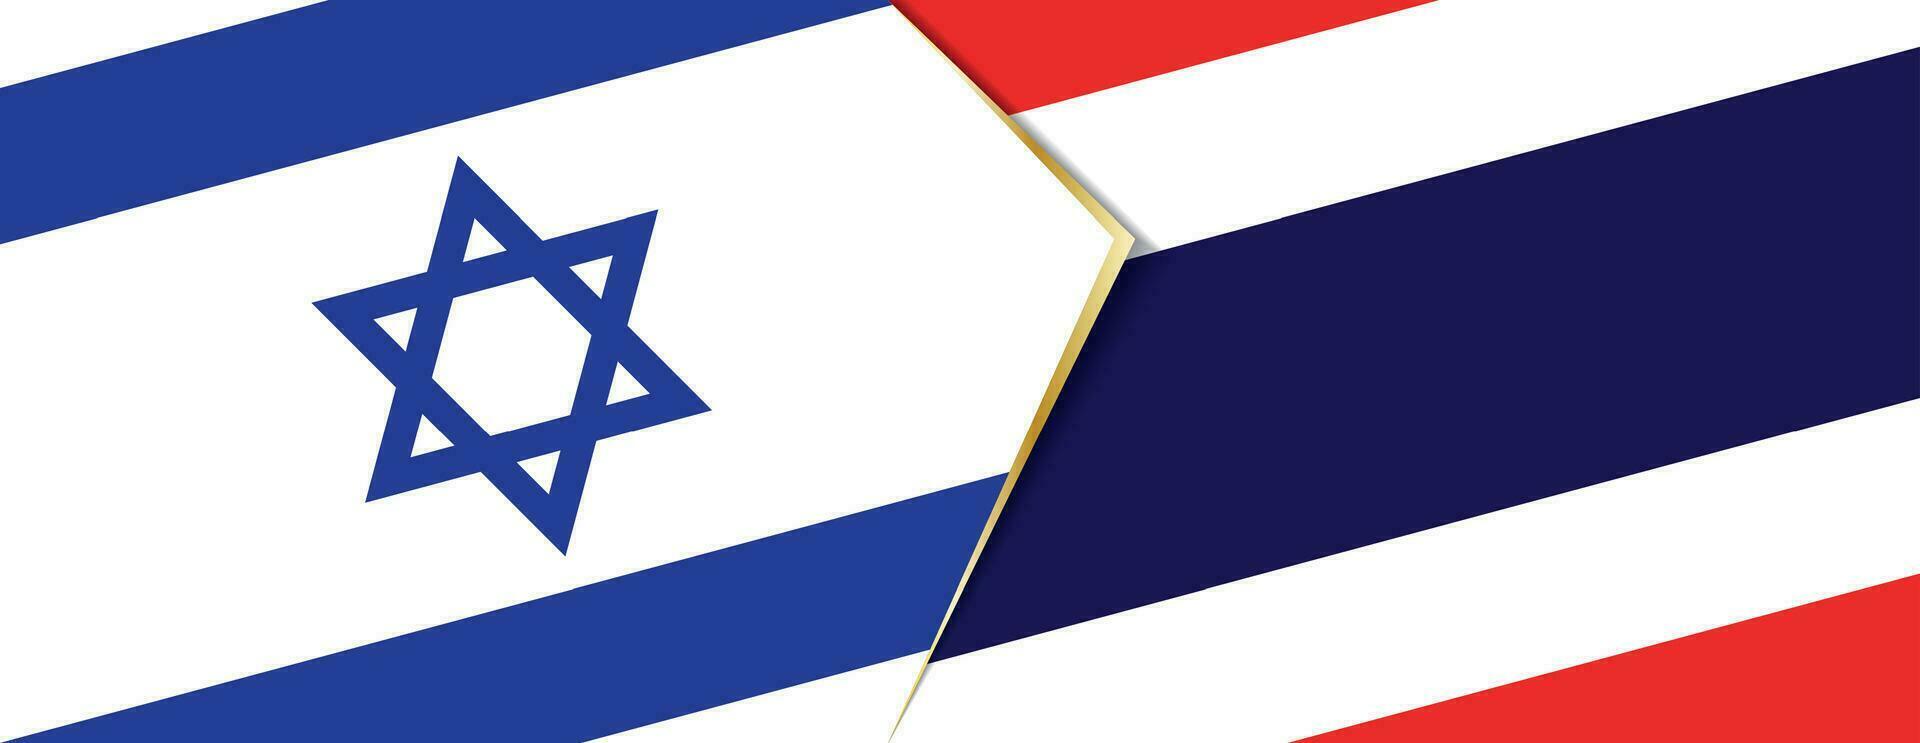 Israel och thailand flaggor, två vektor flaggor.